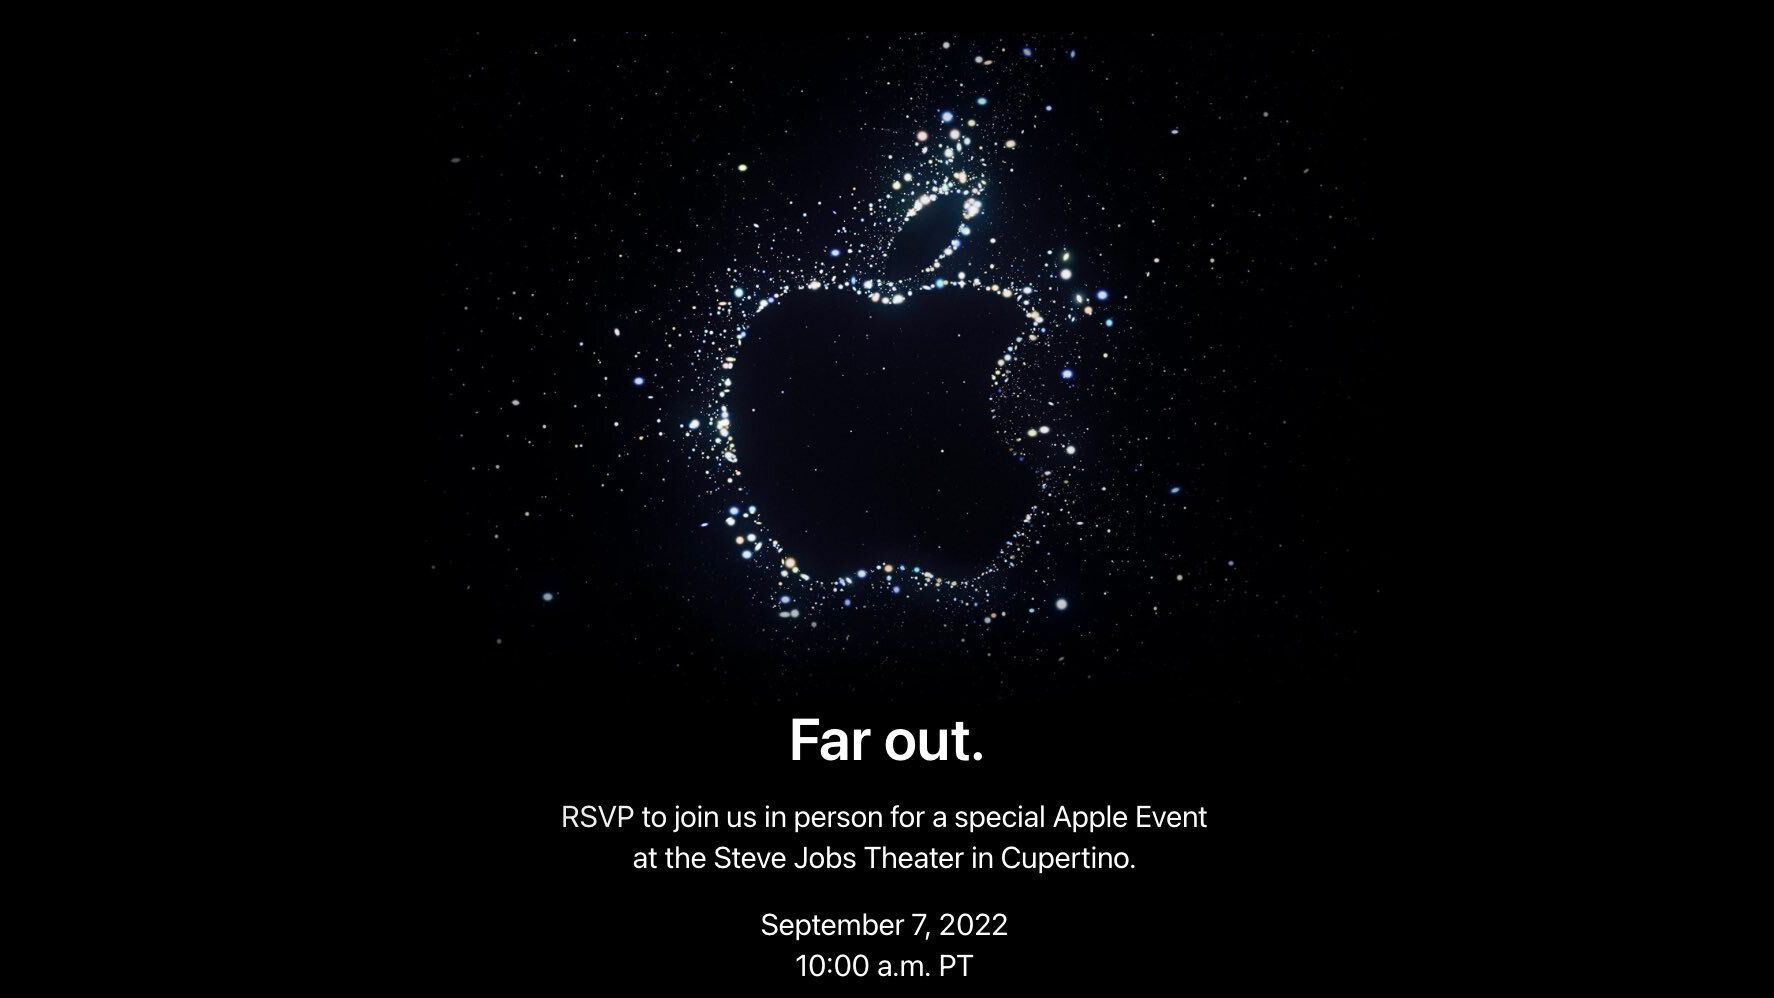 Apple chính thức gửi thư mời sự kiện “Far Out” vào 8/9 ra mắt iPhone 14, Apple Watch Series 8 và nhiều thứ khác